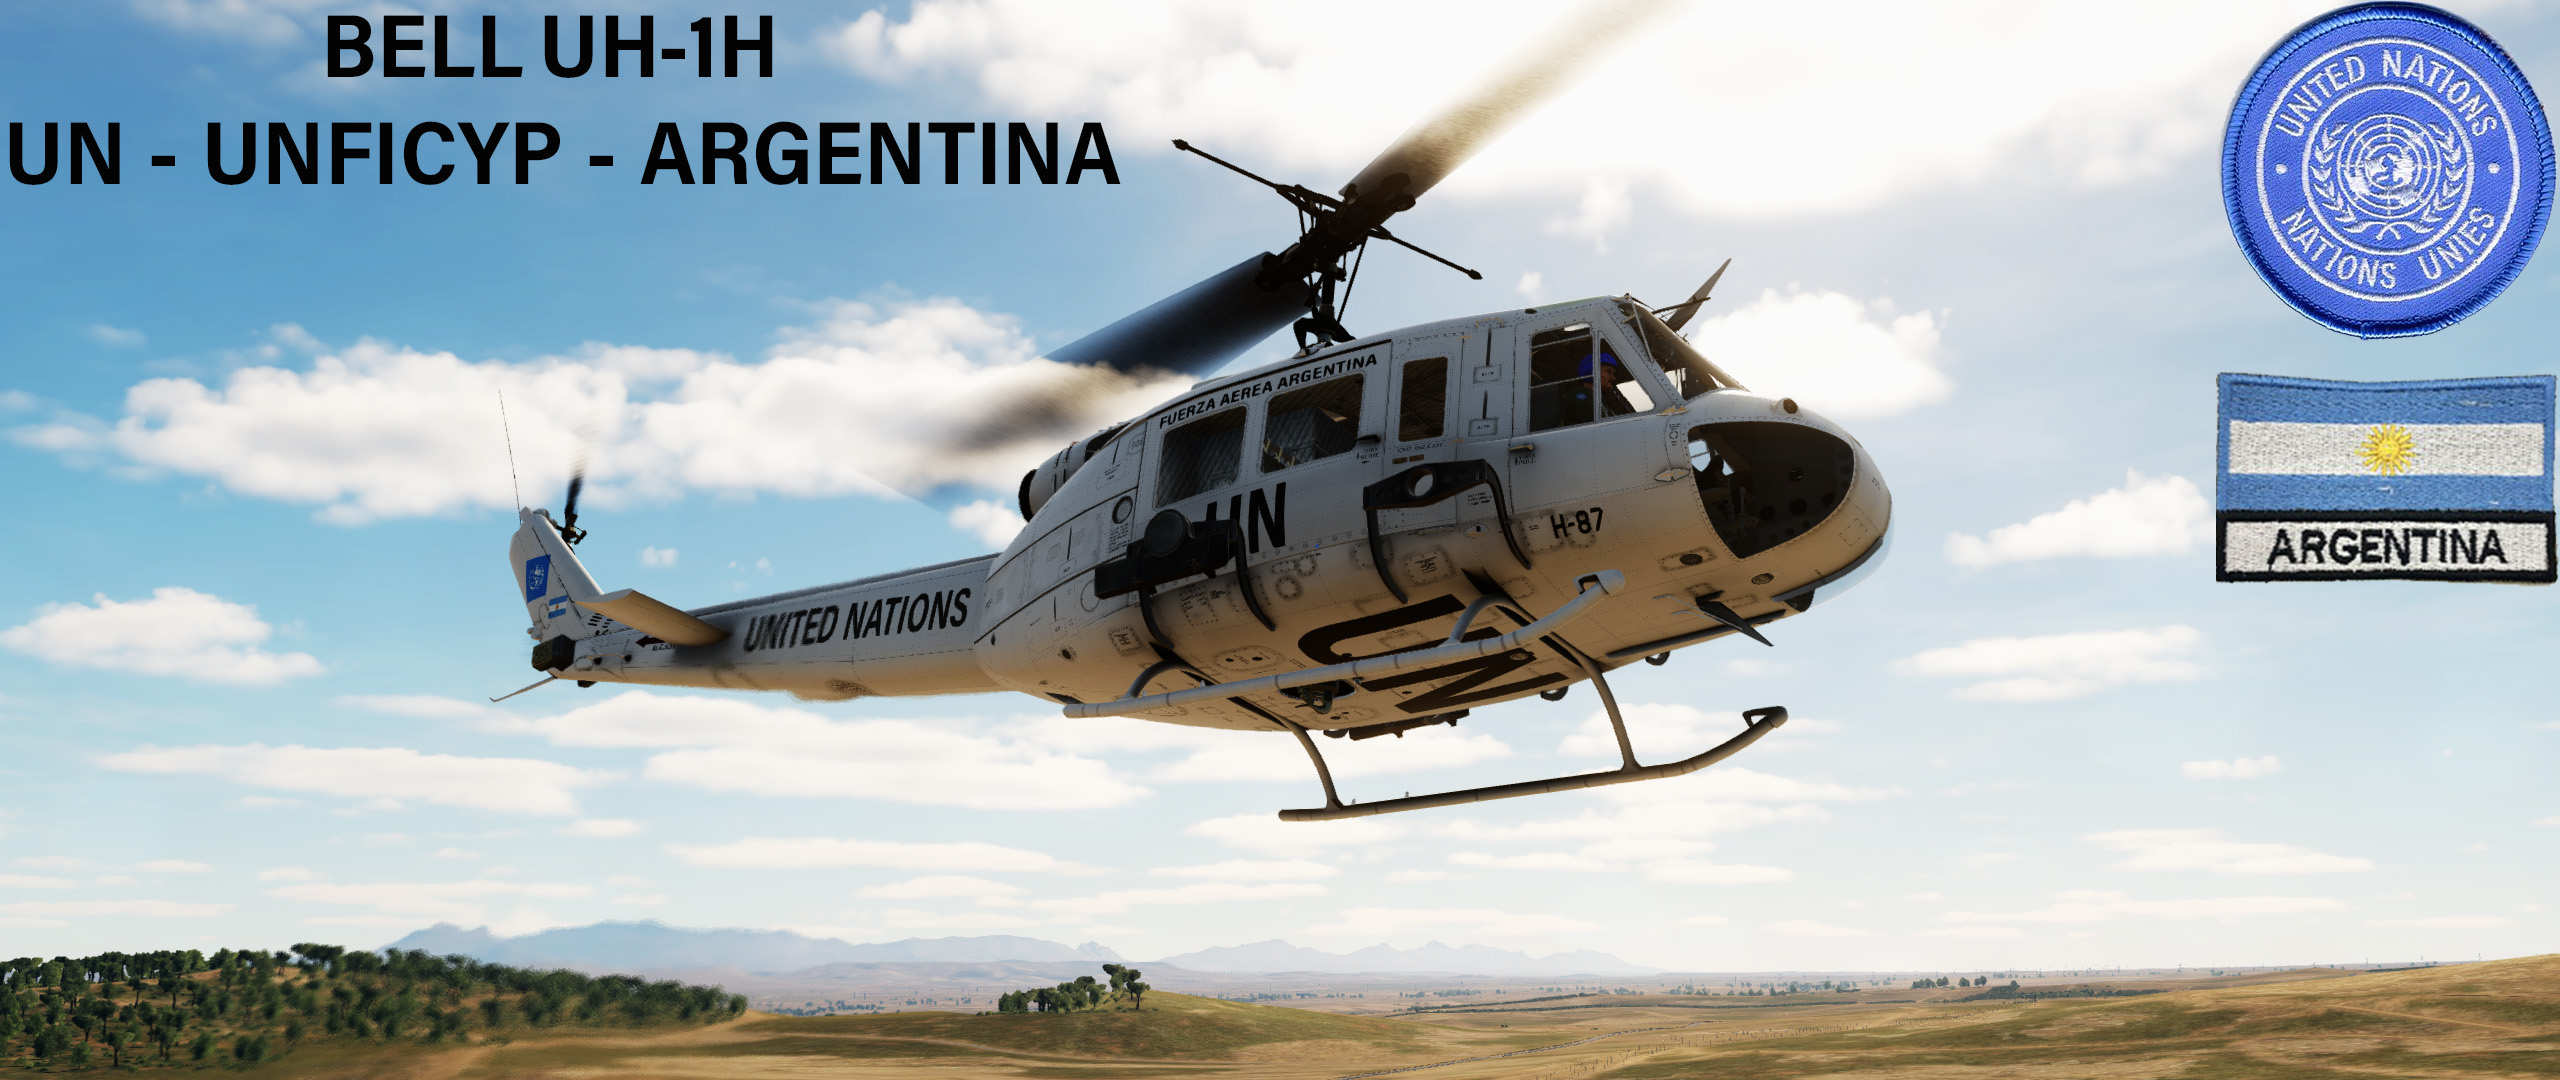 UNFICYP UH-1H ARGENTINA Update 07Ago22